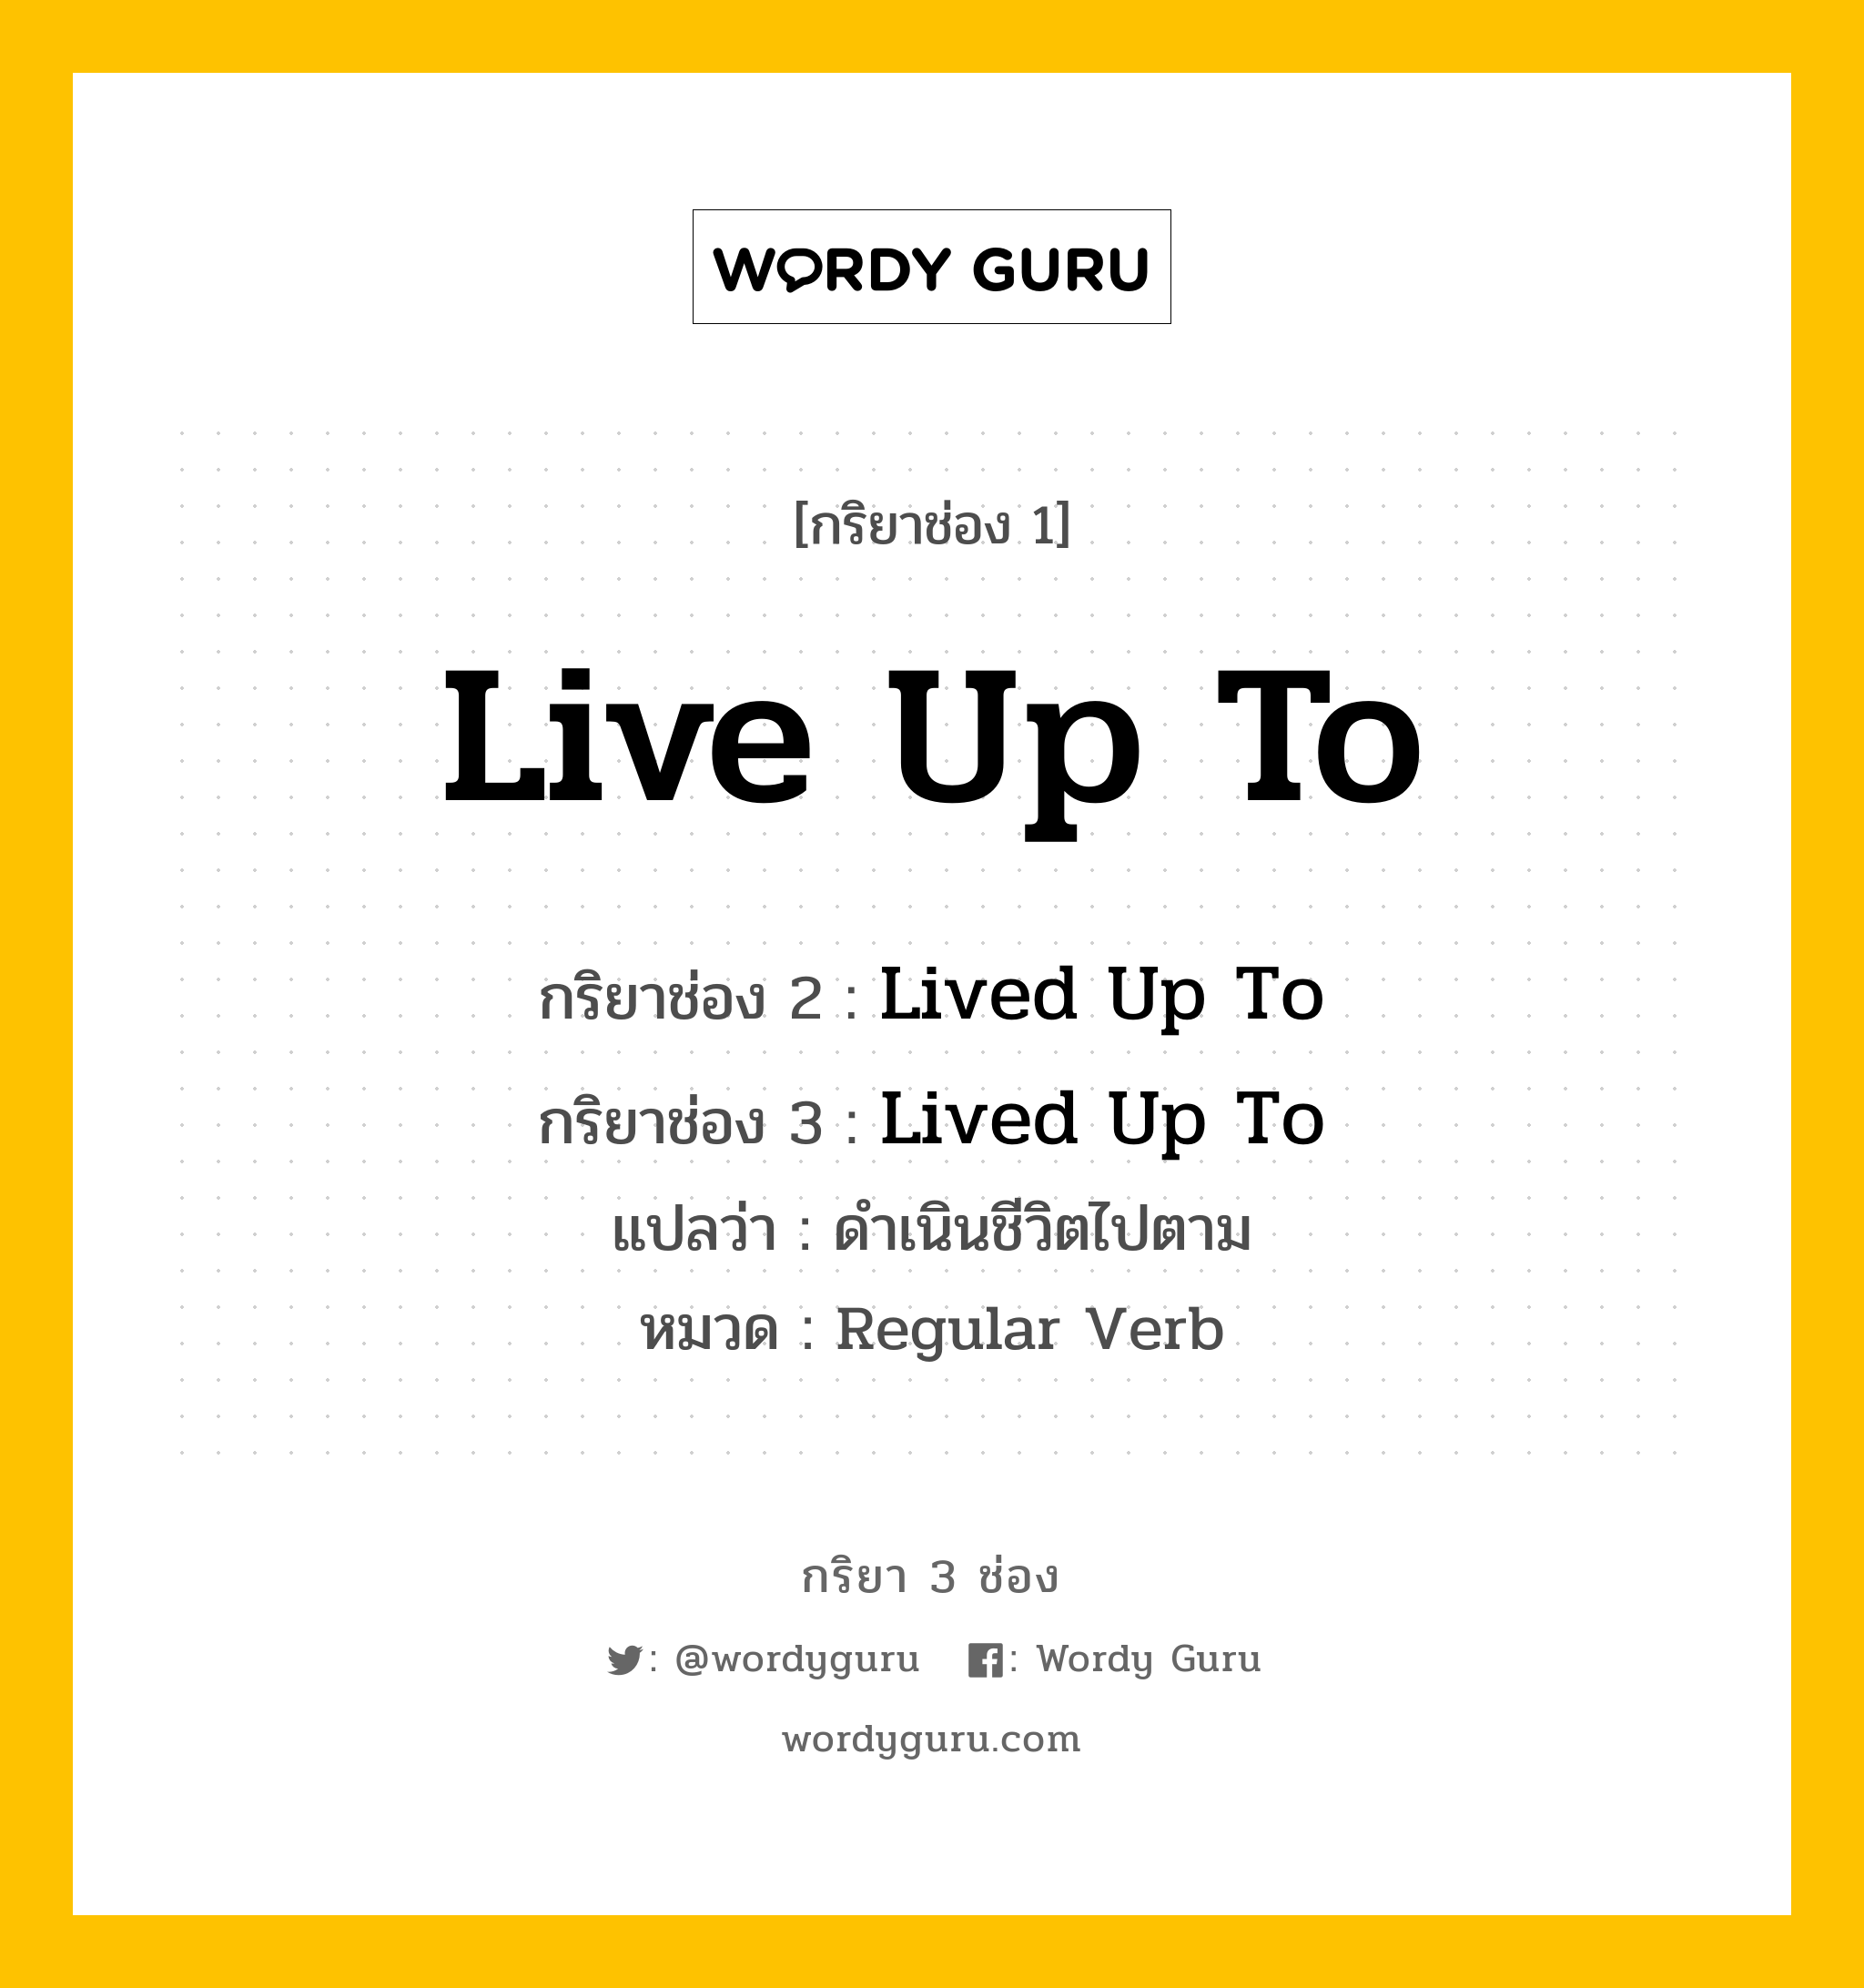 กริยา 3 ช่อง ของ Live Up To คืออะไร?, กริยาช่อง 1 Live Up To กริยาช่อง 2 Lived Up To กริยาช่อง 3 Lived Up To แปลว่า ดำเนินชีวิตไปตาม หมวด Regular Verb หมวด Regular Verb